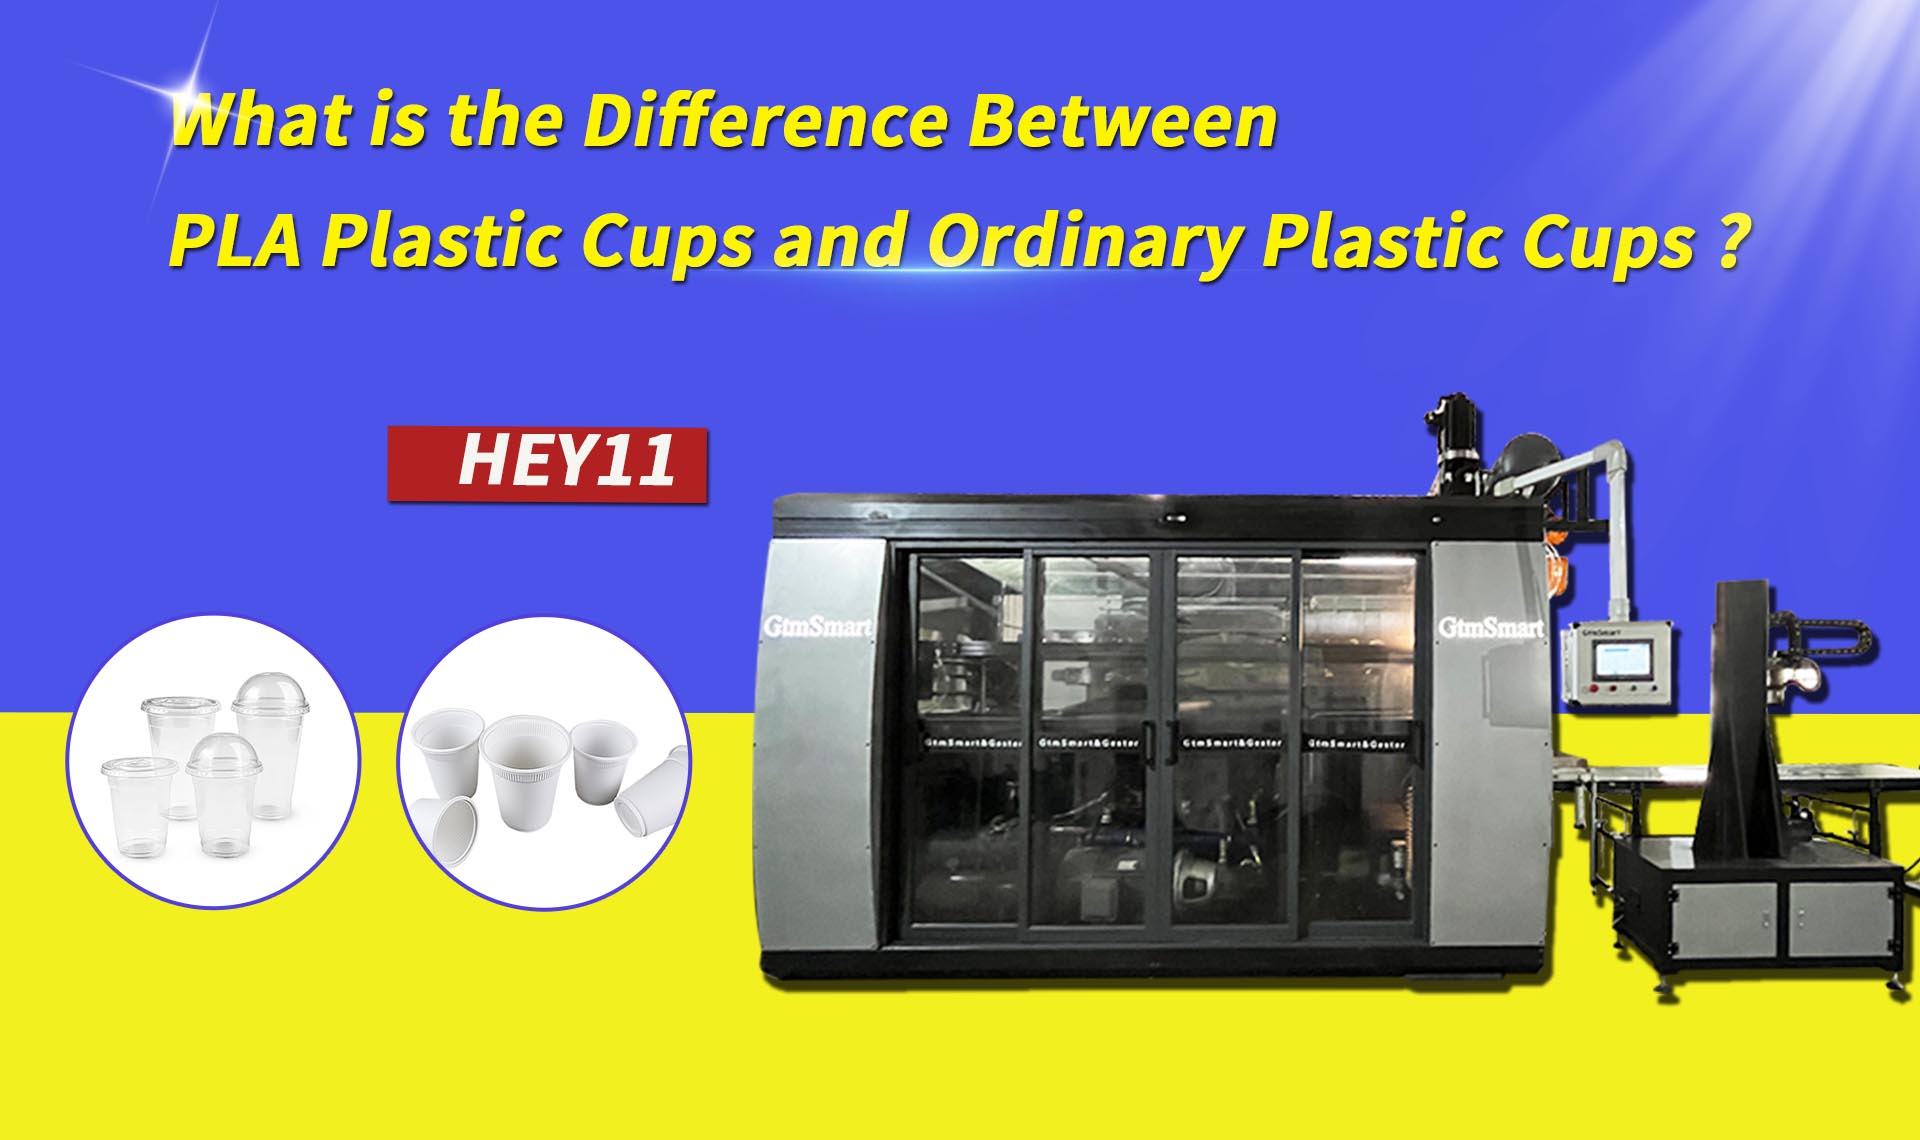 Mi a különbség a PLA műanyag poharak és a hagyományos műanyag poharak között?